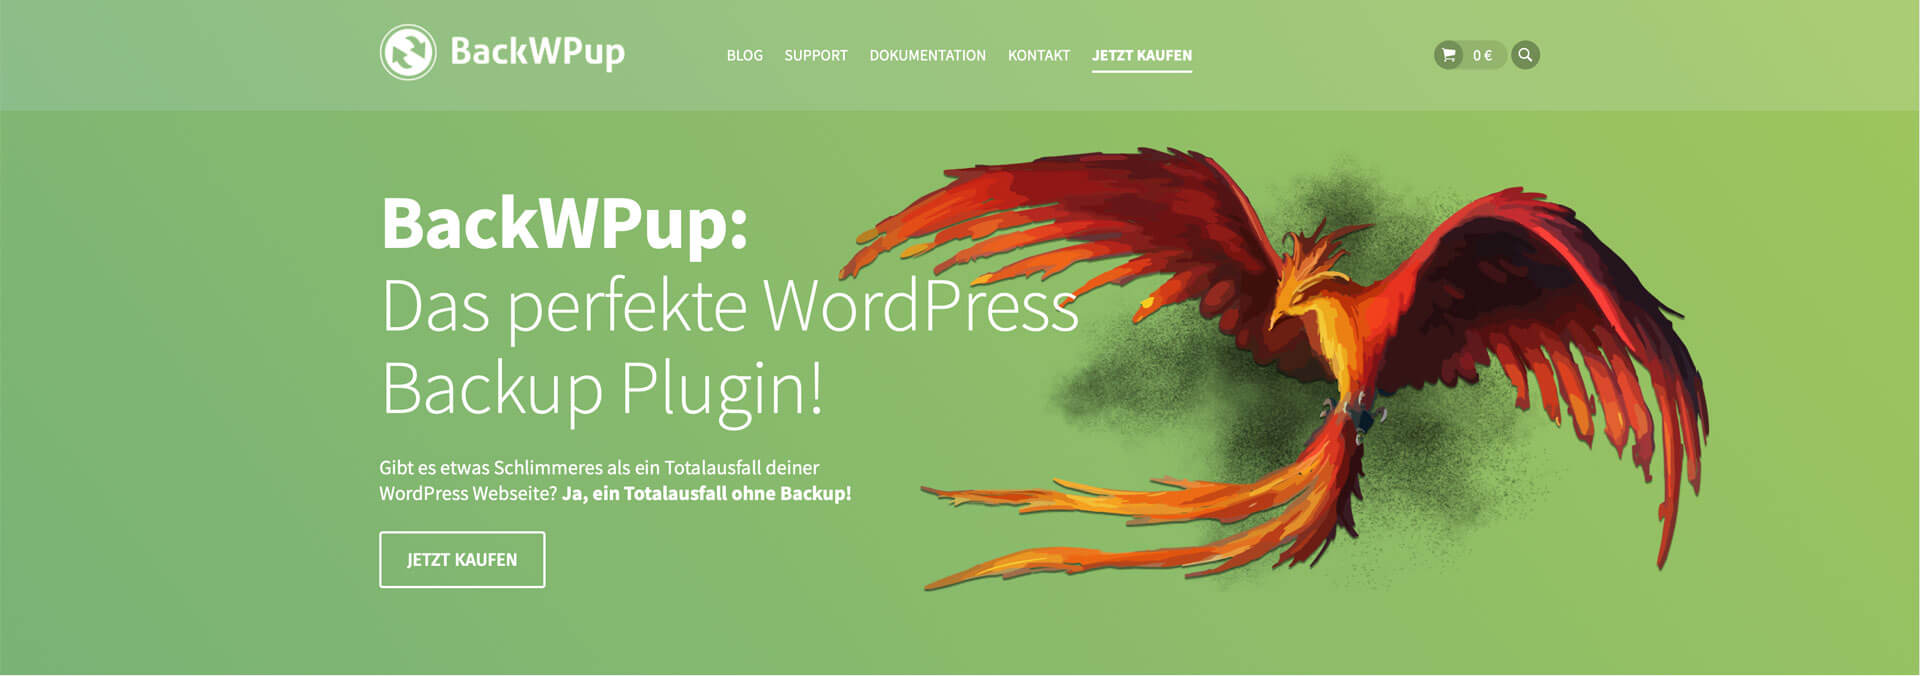 BackWPup - WordPress Backup Tools vorgestellt von der Inspiras Webagentur Frankfurt